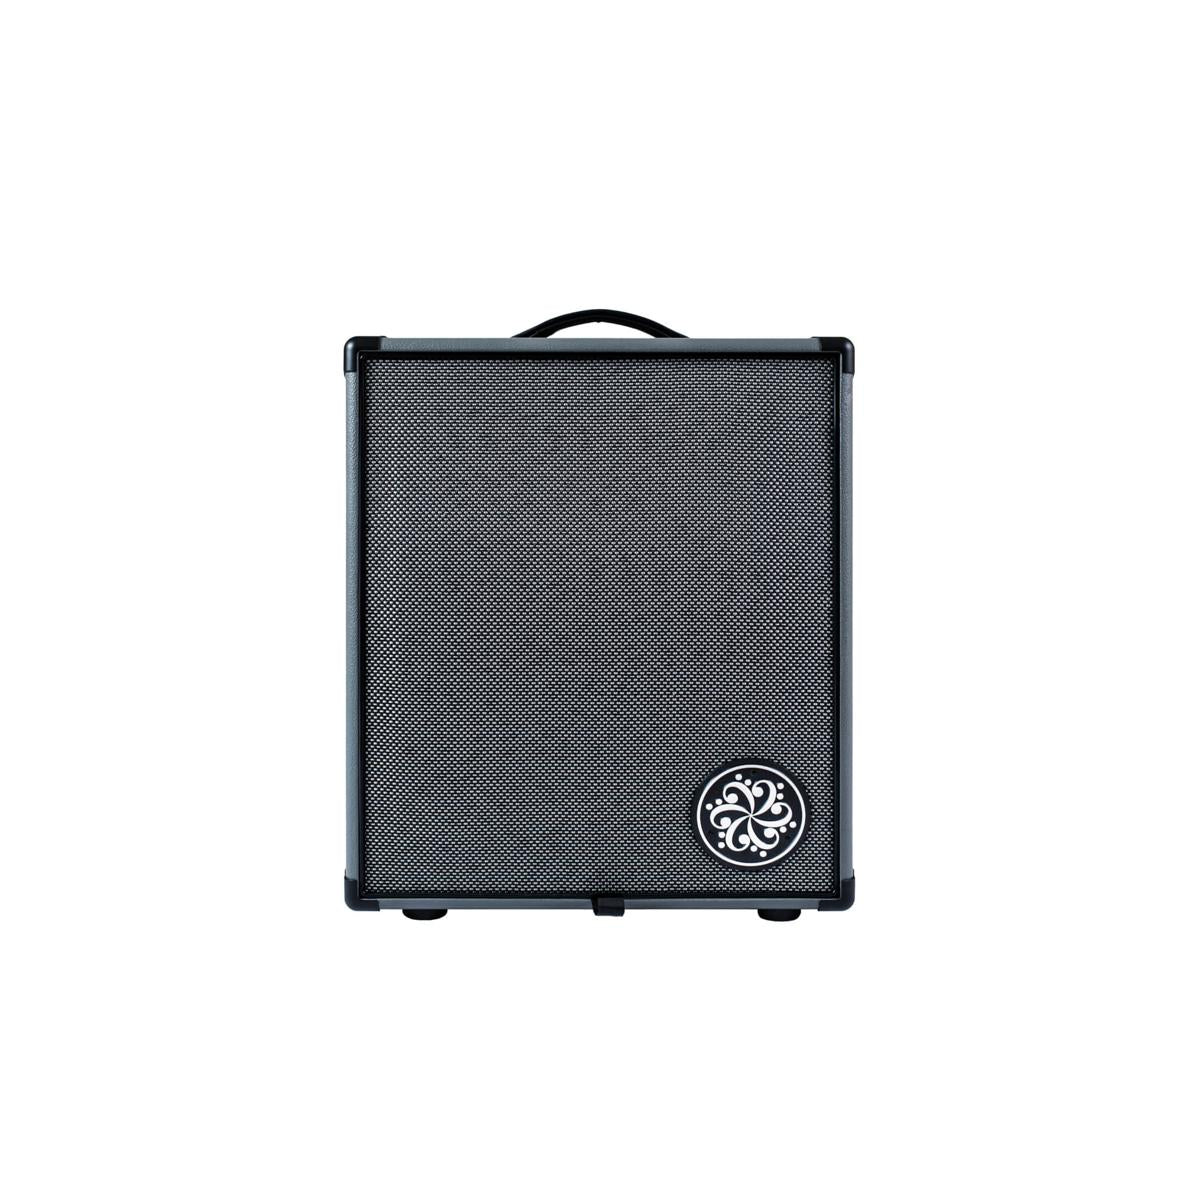  Darkglass Microtubes 500 Combo 210 Bass Guitar Amplifier 500w 2x10inch Amp